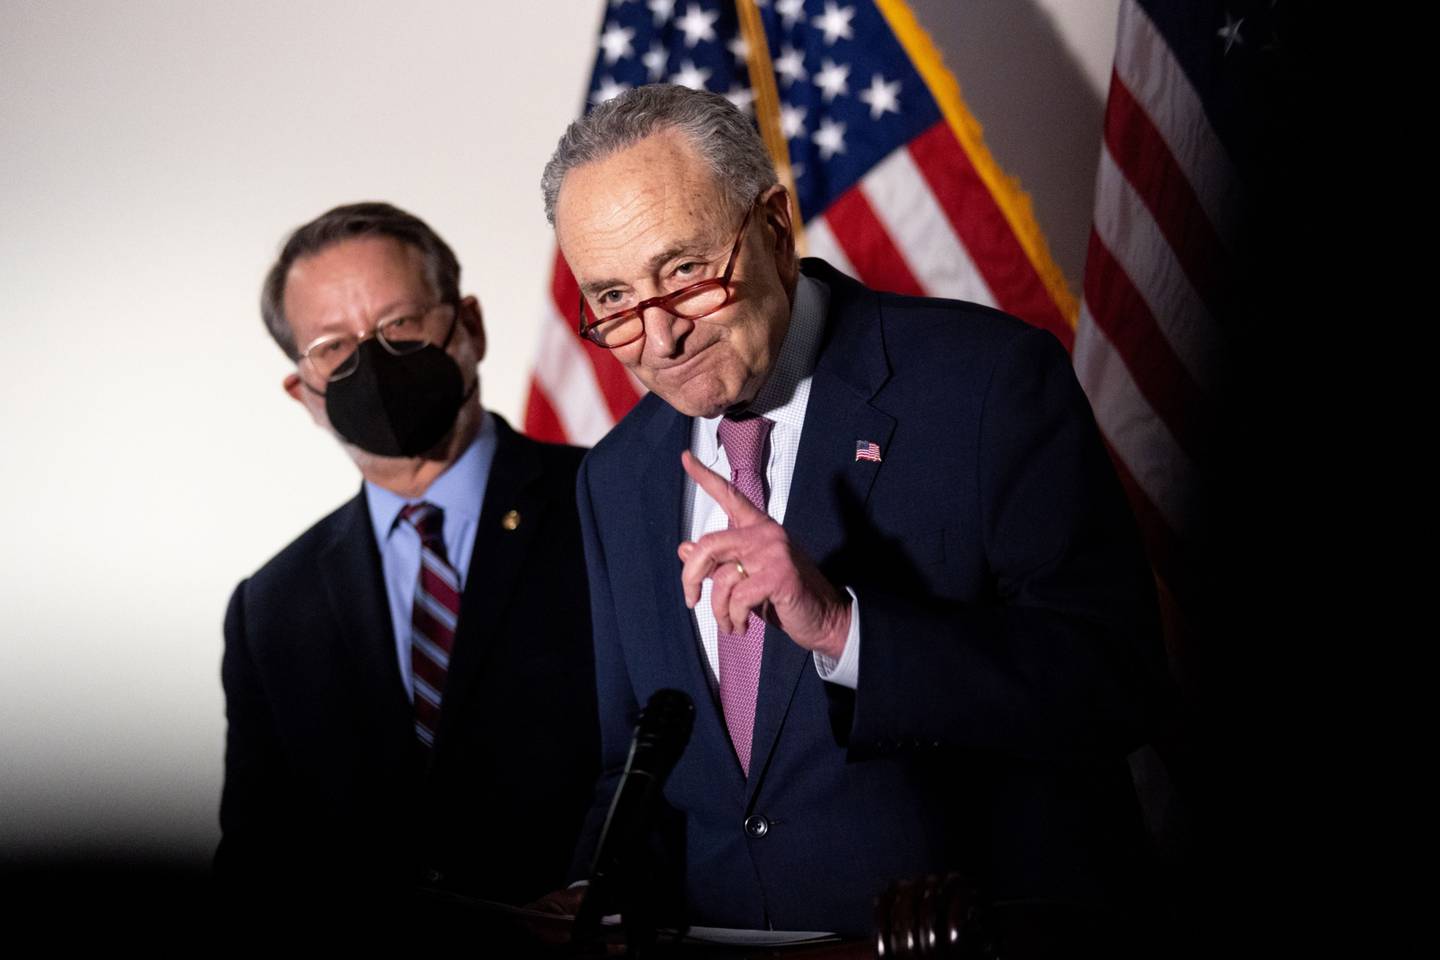 El líder de la mayoría del Senado, Chuck Schumer, demócrata de Nueva York, durante una conferencia de prensa tras el almuerzo semanal de su bancada en el Capitolio en Washington, D.C., EE.UU. el martes 8 de febrero de 2022.